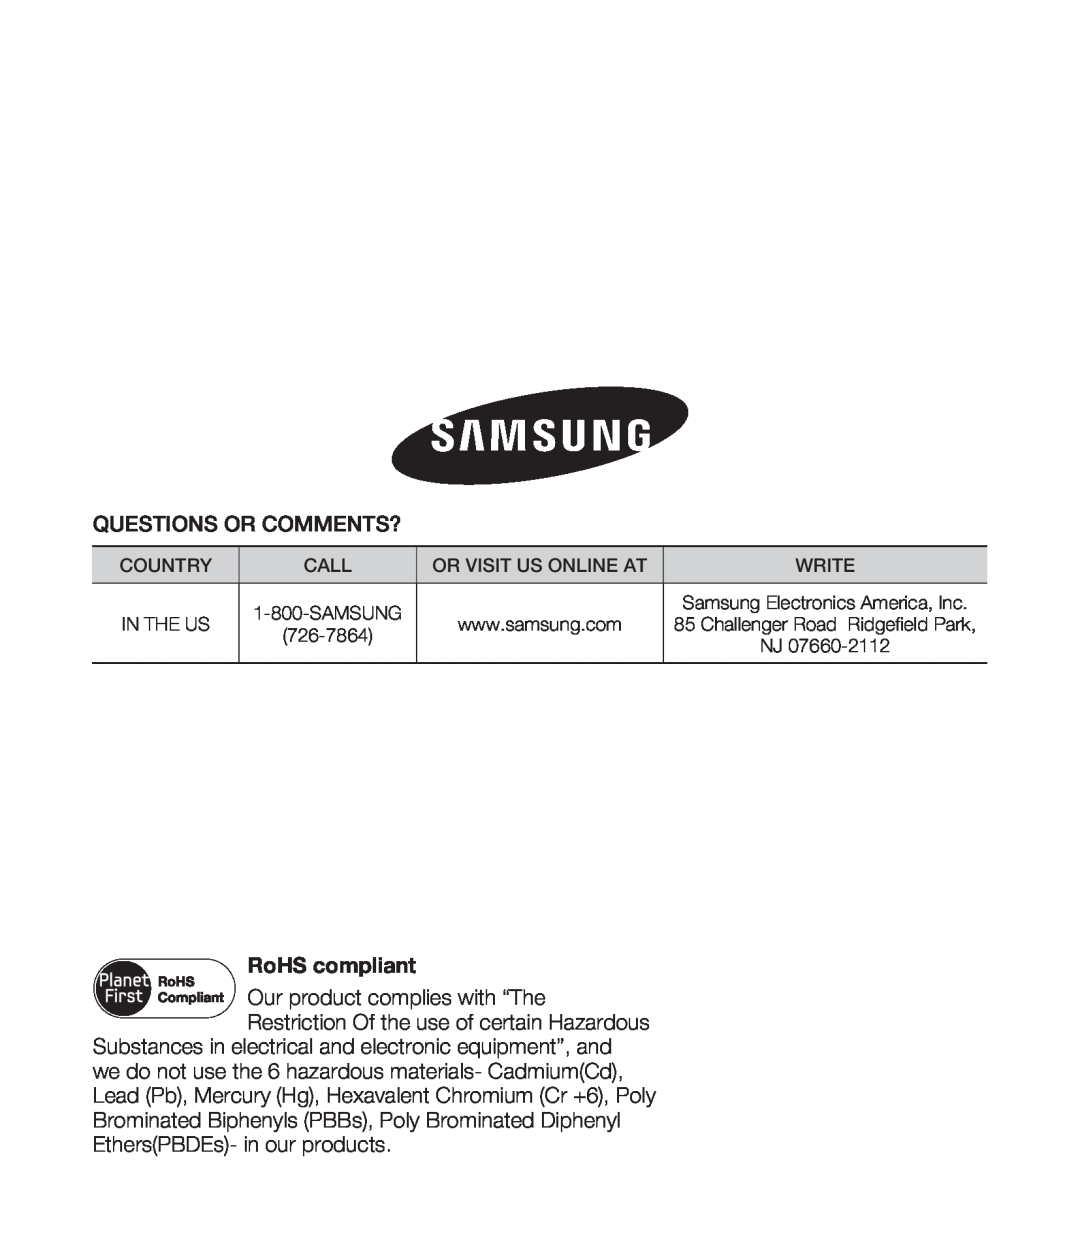 Samsung HMX-S15BN/XAA, HMX-S10BN/XAA manual RoHS compliant 